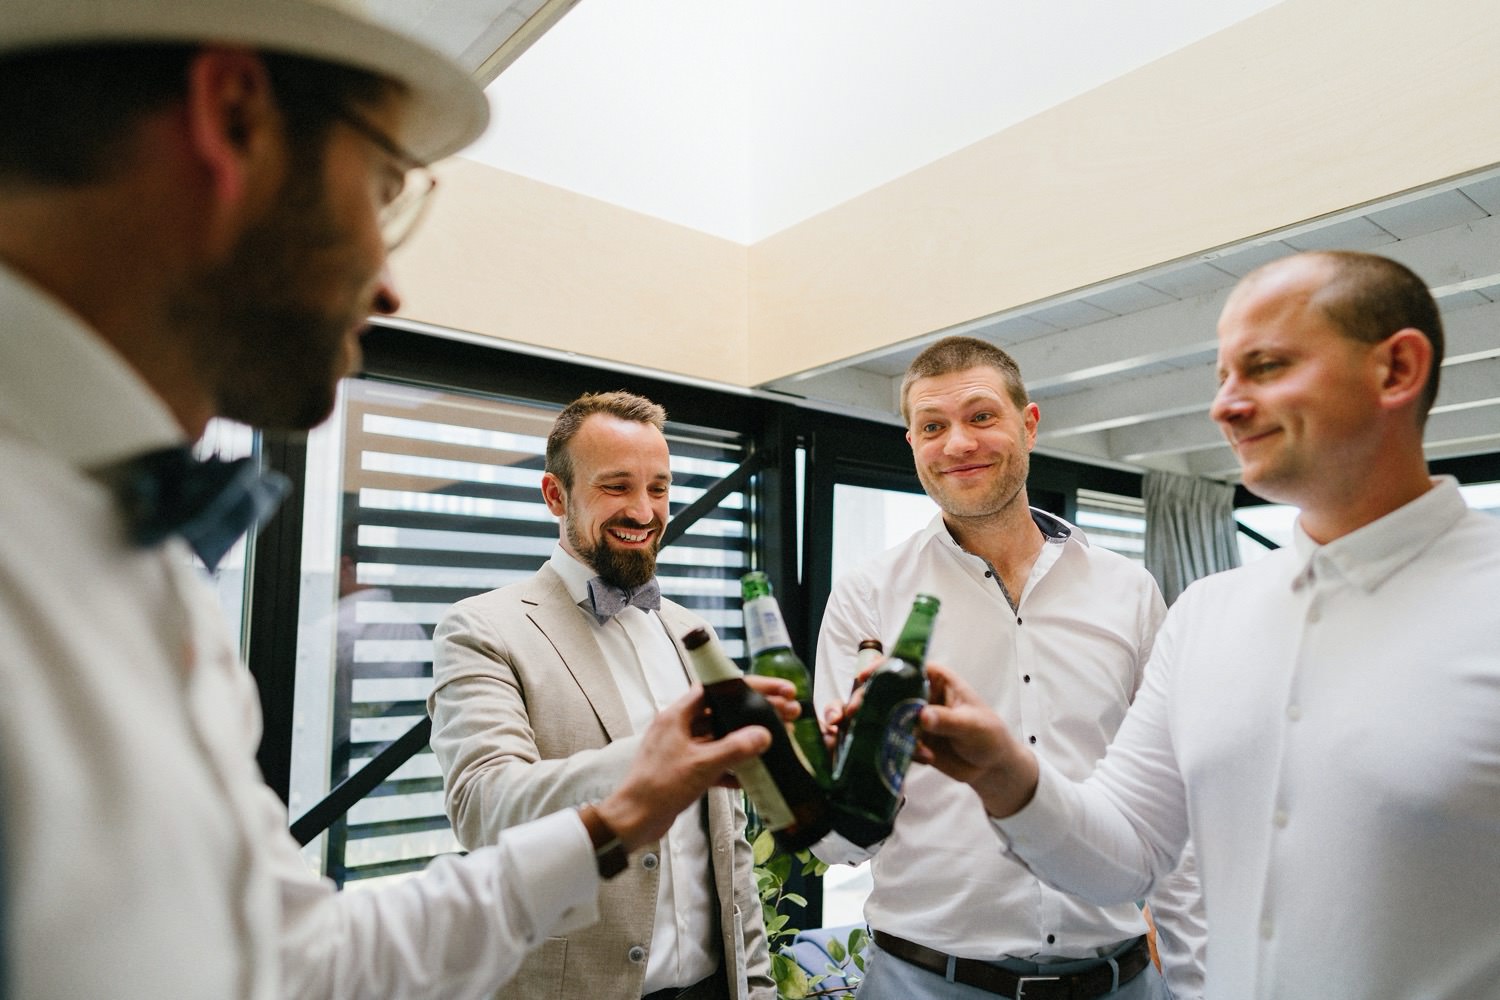 Der Bräutigam stößt voller Vorfreude im malerischen Ferienhaus in Zandvoort mit seinen besten Freunden mit Bier an. Ein intimer Moment des "Getting Ready" vor der Hochzeit, gefüllt mit Freundschaft und Vorfreude auf den besonderen Tag.